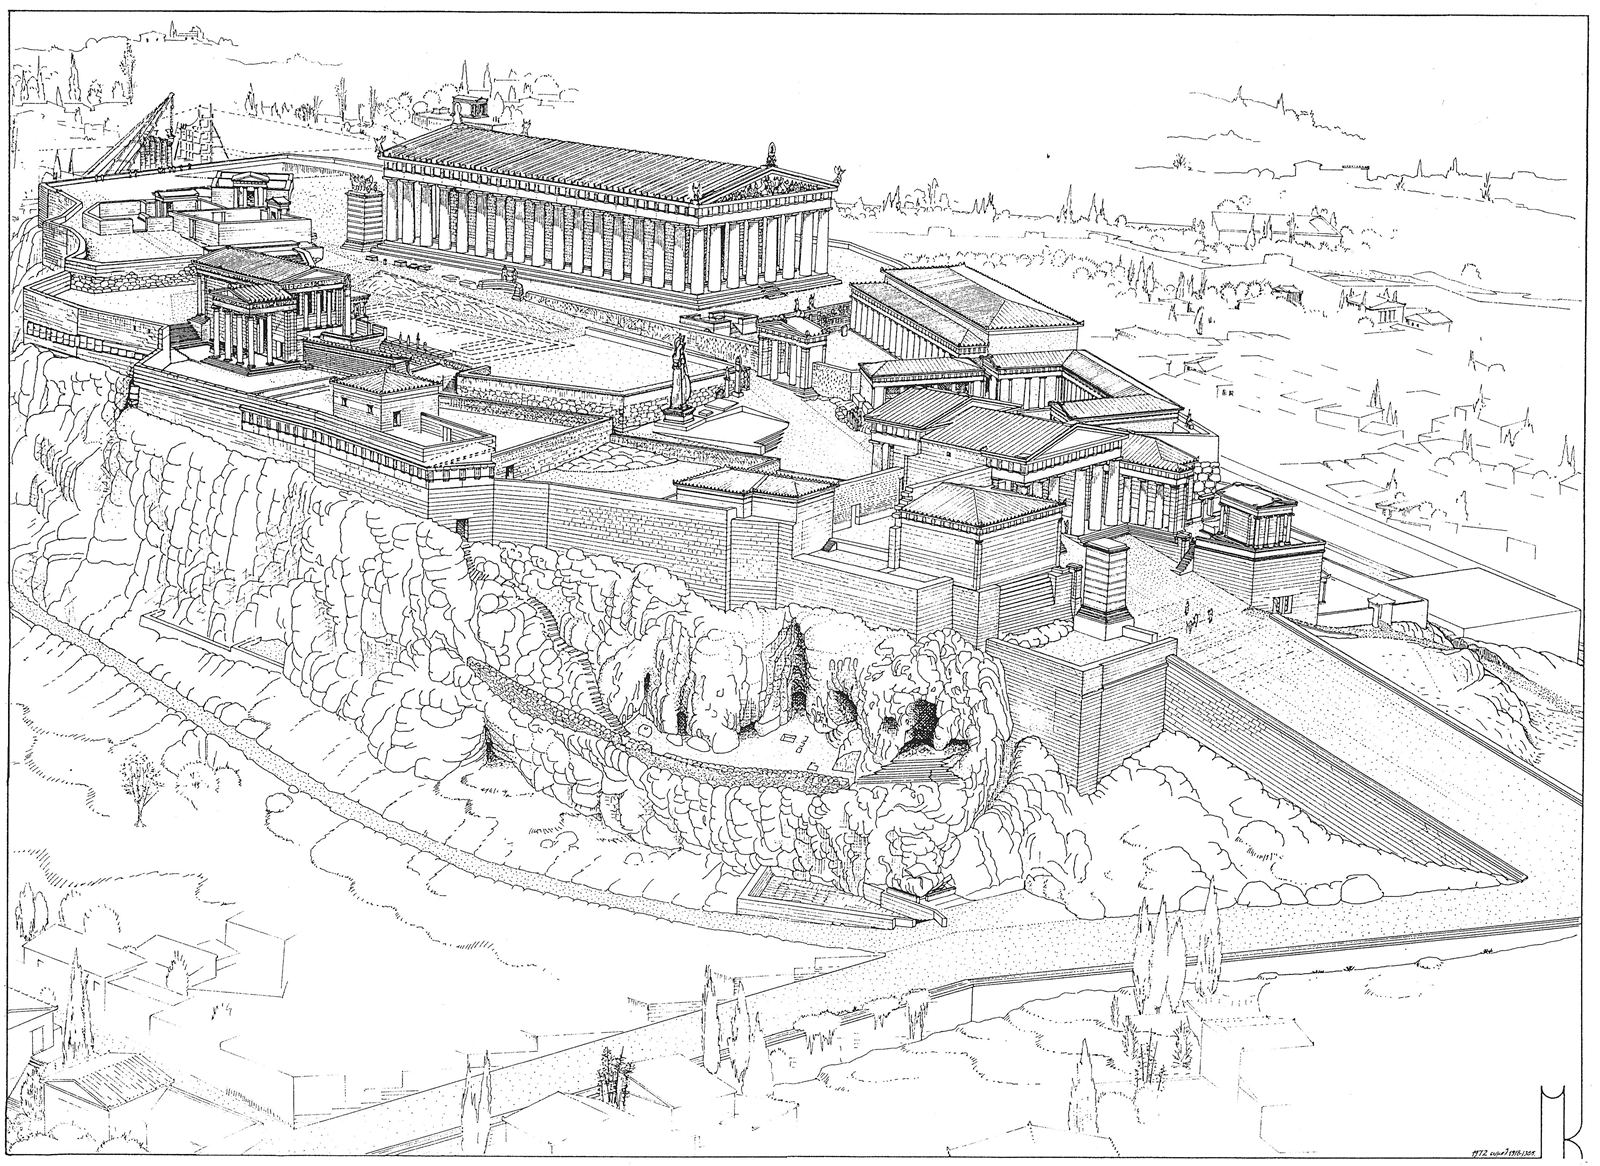 Σχέδιο - Αναπαράσταση της ράμπας της Ακρόπολης (περίπου 500 π. Χ.) από τον Μανόλη Κορρέ.